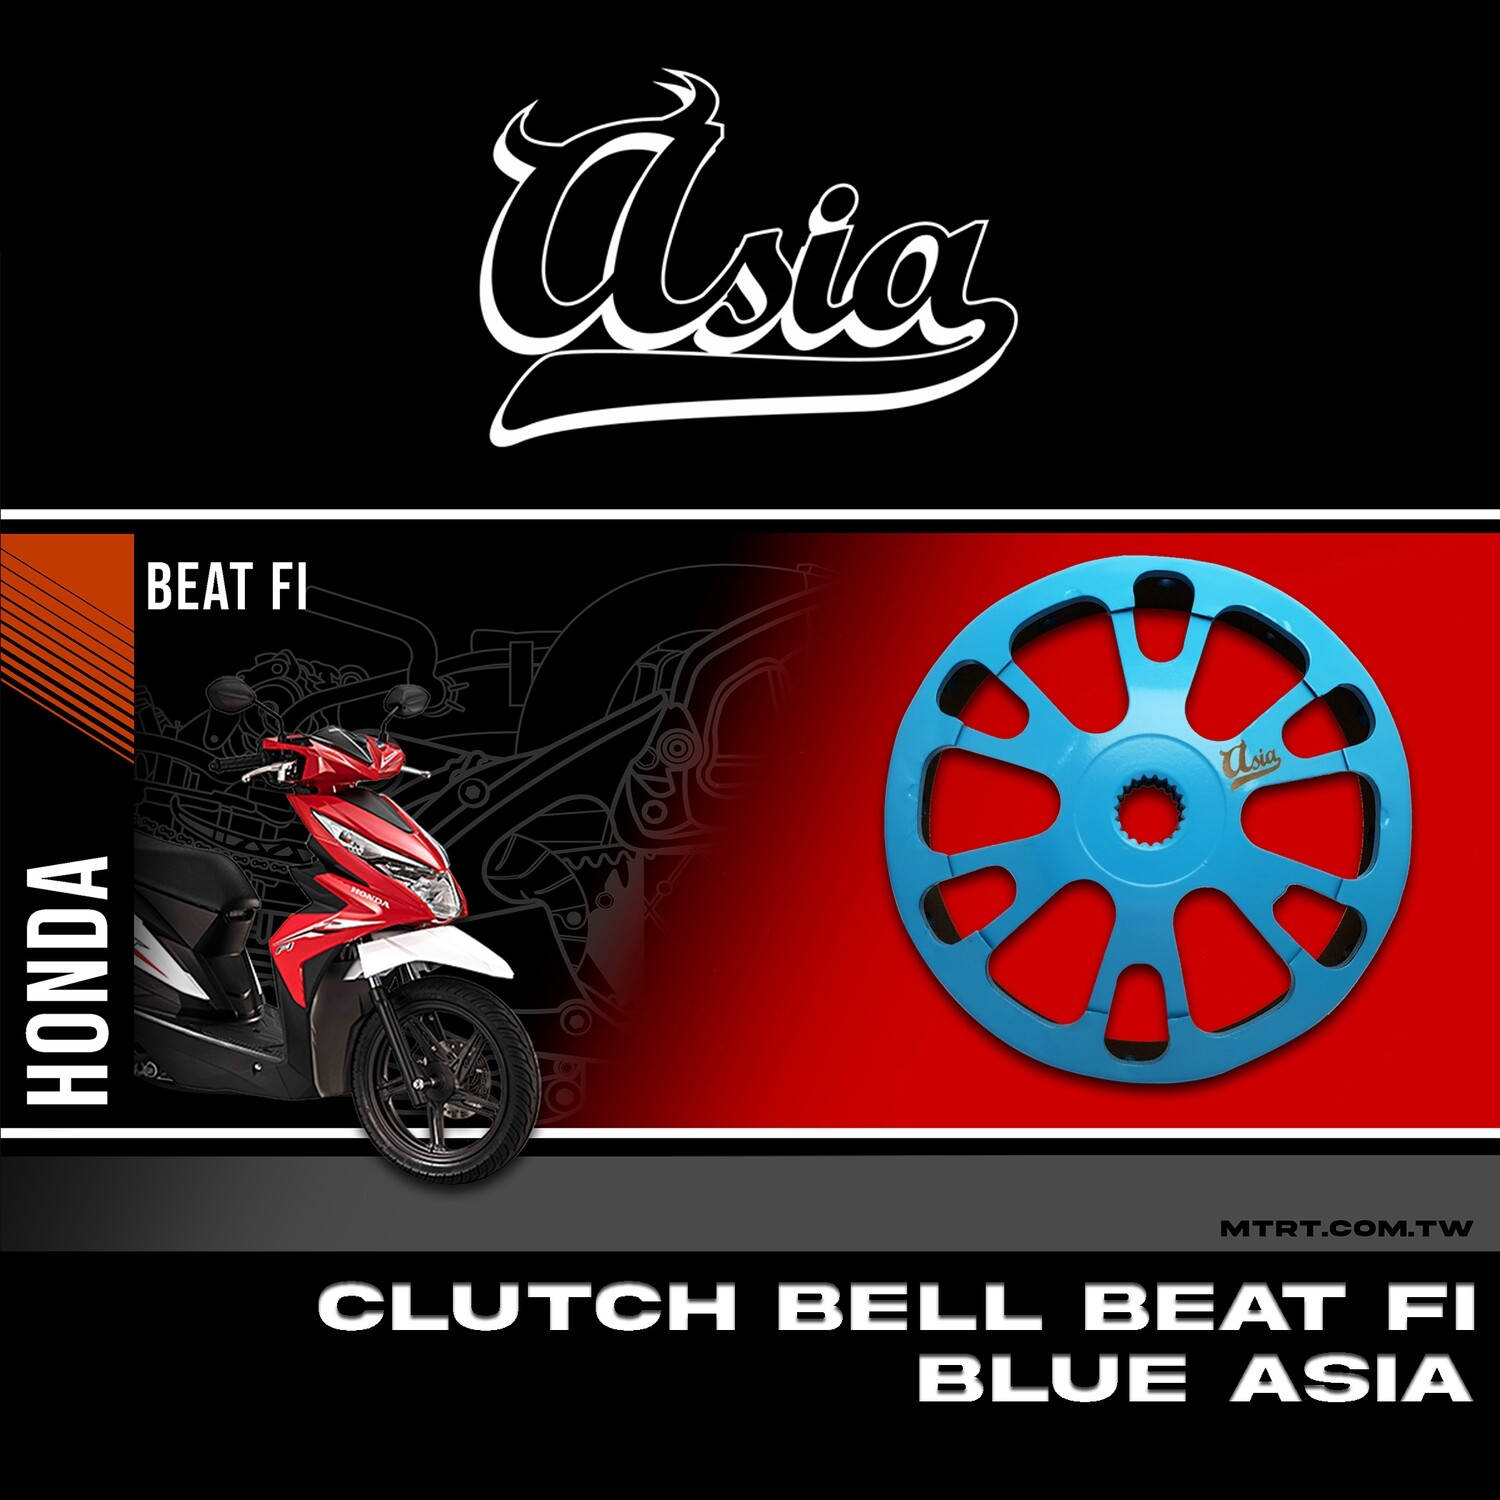 CLUTCH BELL BEAT Fi BLUE ASIA